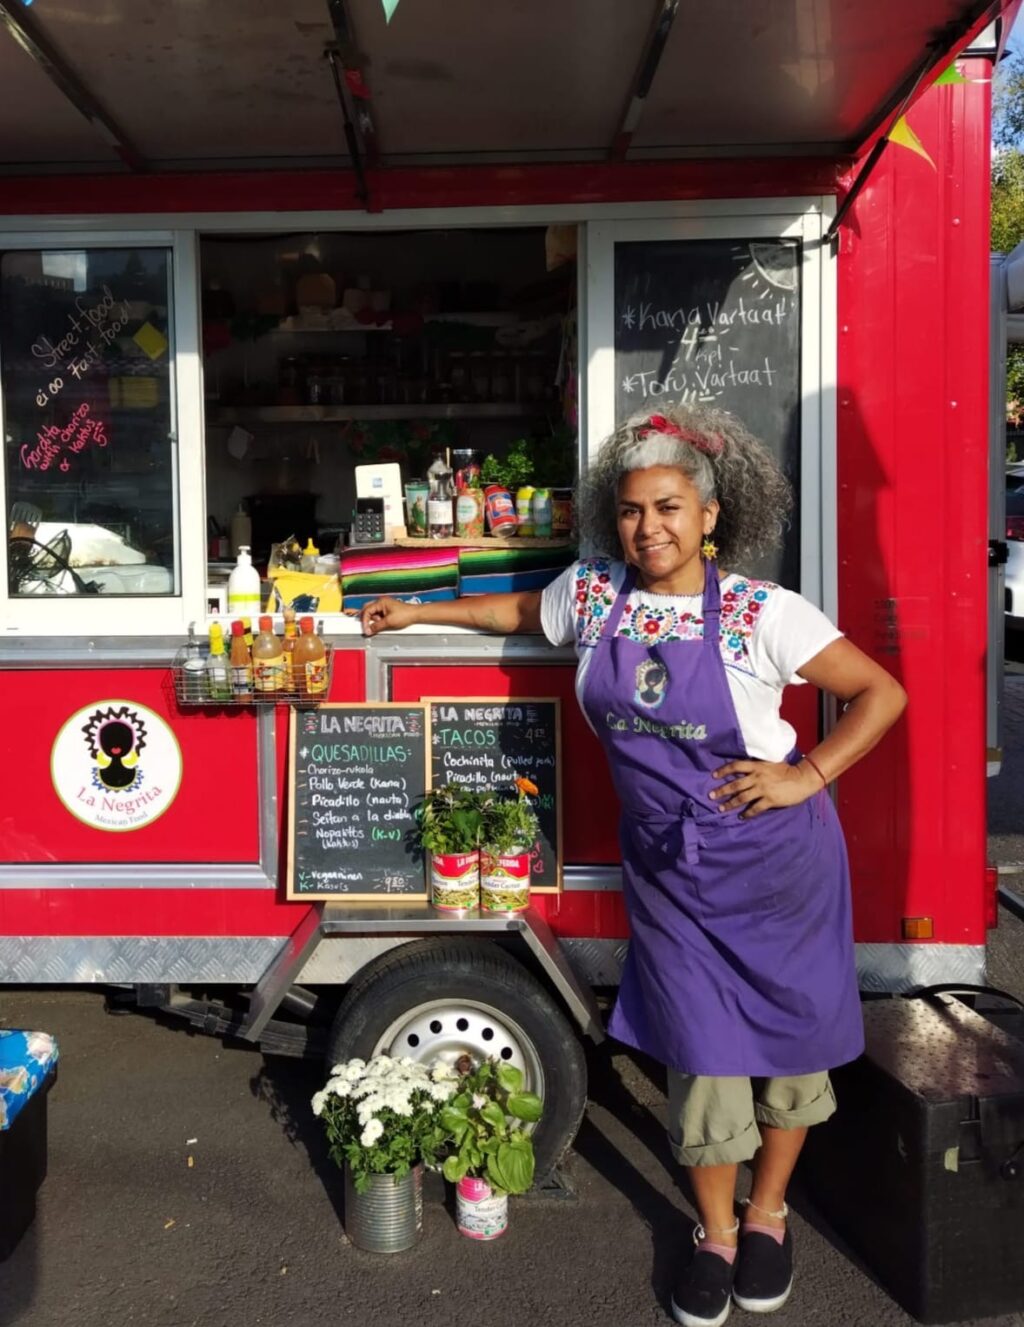 La Negritan yrittäjä Sol punaisen ruokakojunsa edessä Tammelantorilla kesäauringossa.